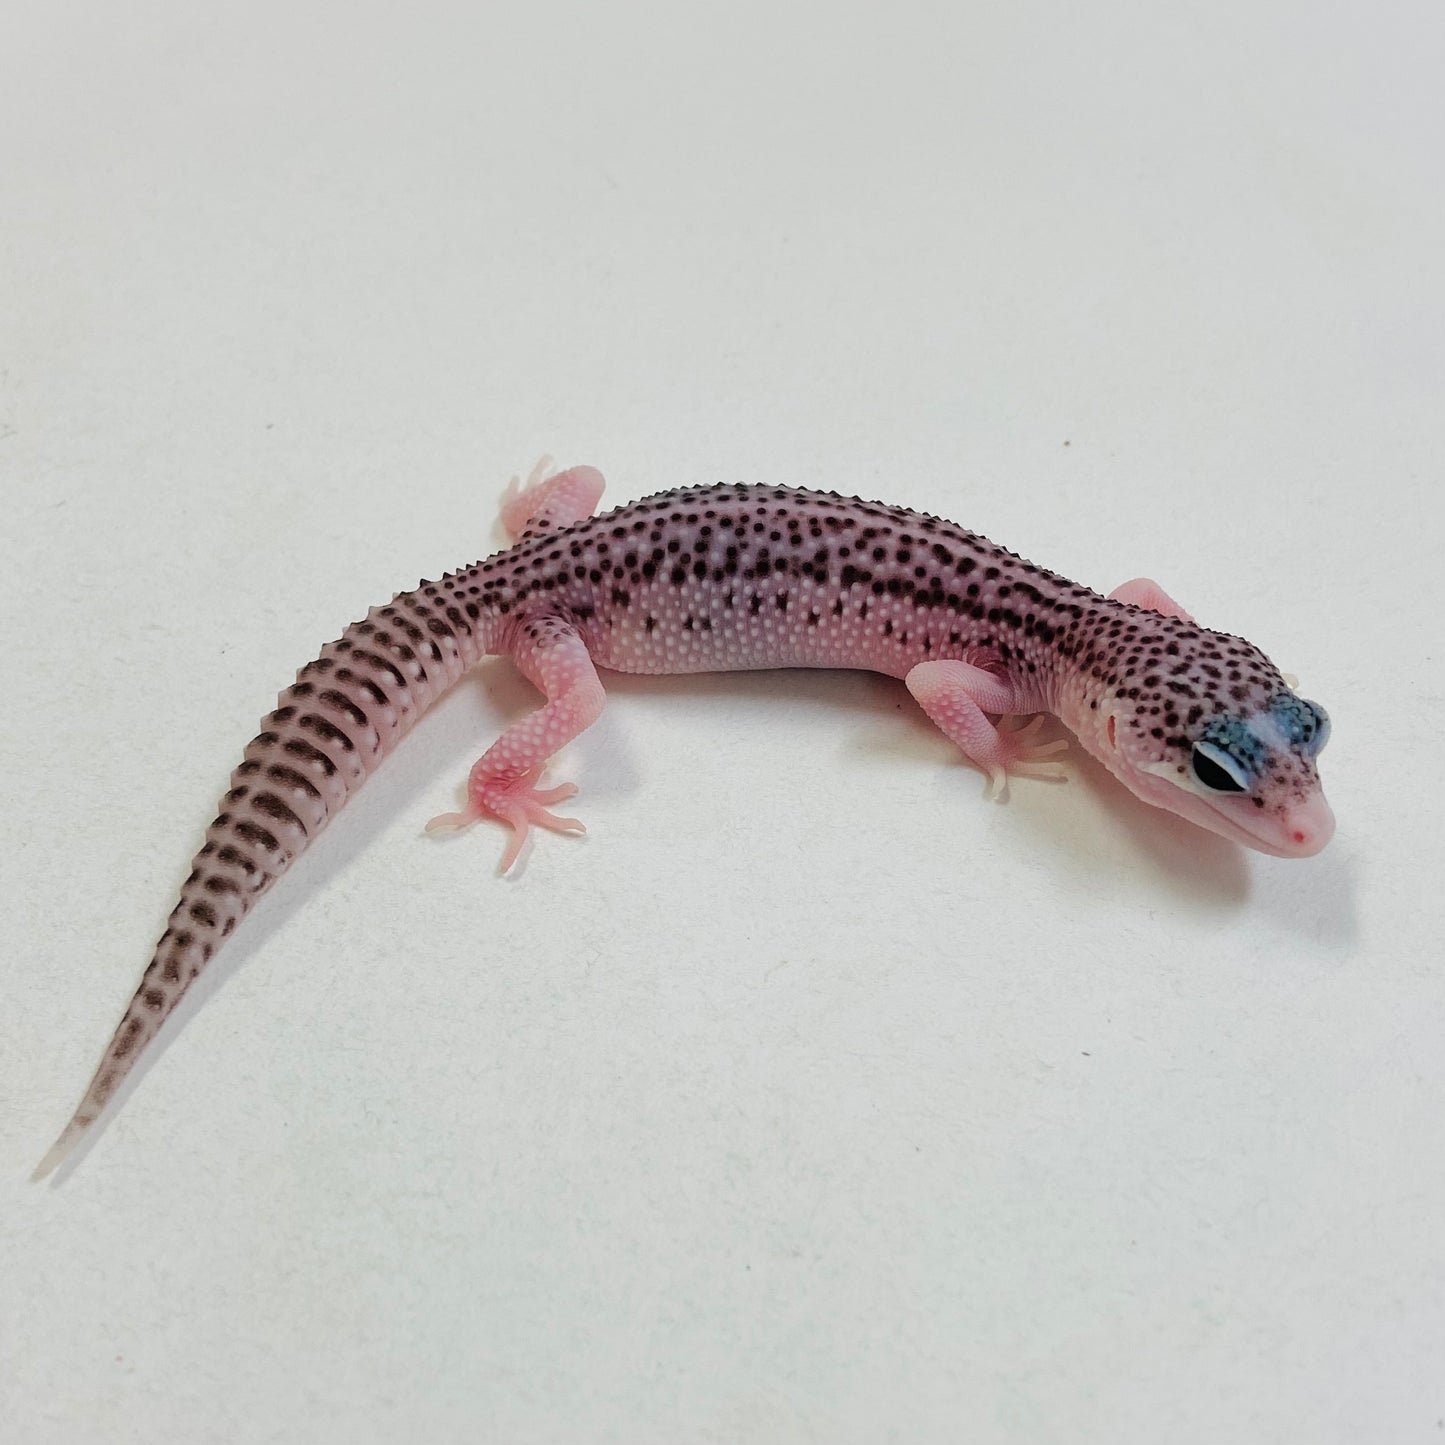 Pied Galaxy Pos Het Tremper Leopard Gecko- Pos Female #C-C7-60323-1